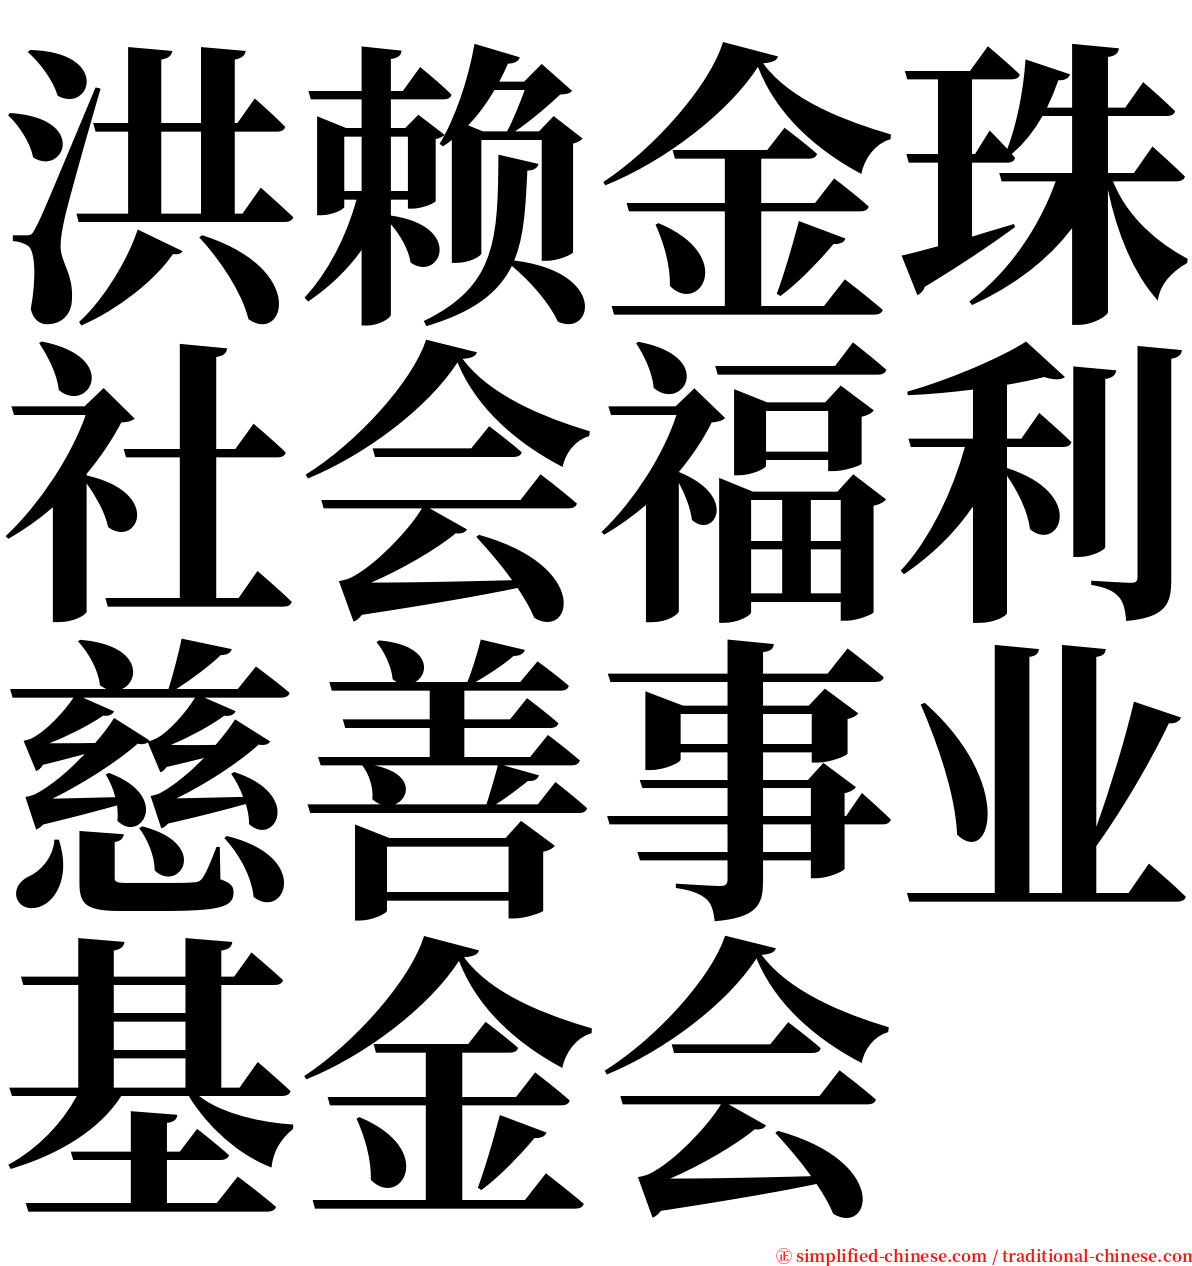 洪赖金珠社会福利慈善事业基金会 serif font